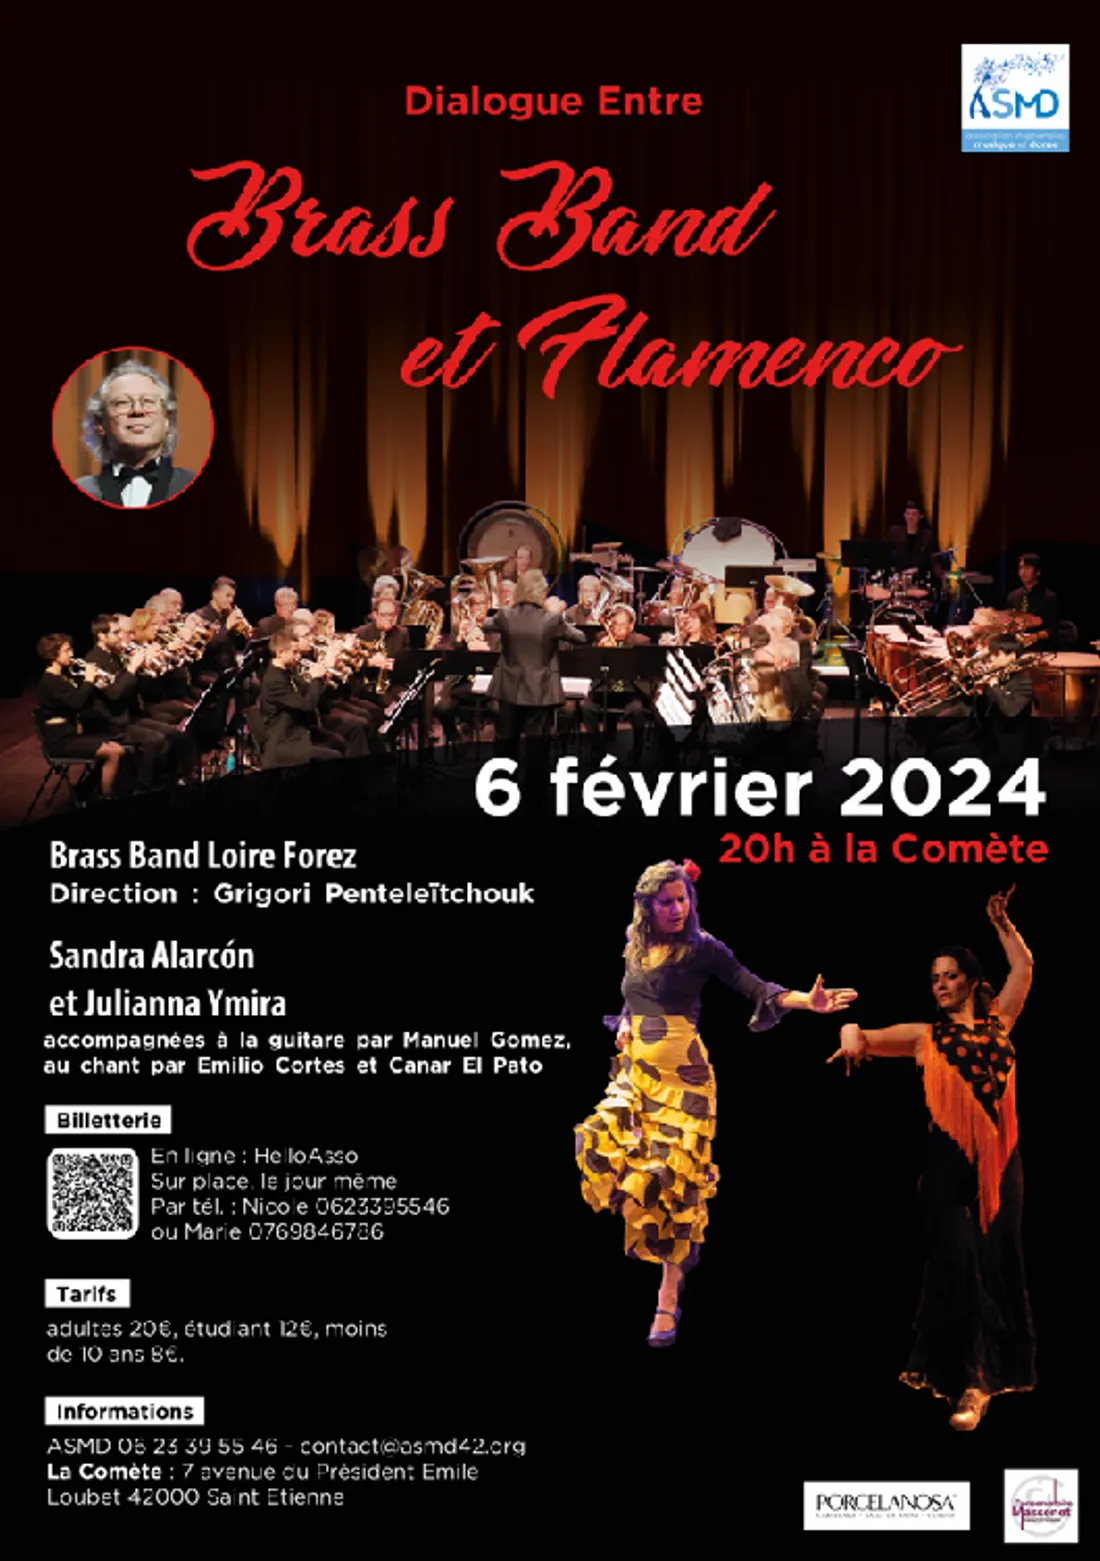 "Dialogue entre Brass Band et Flamenco" à La Comète de St-Etienne